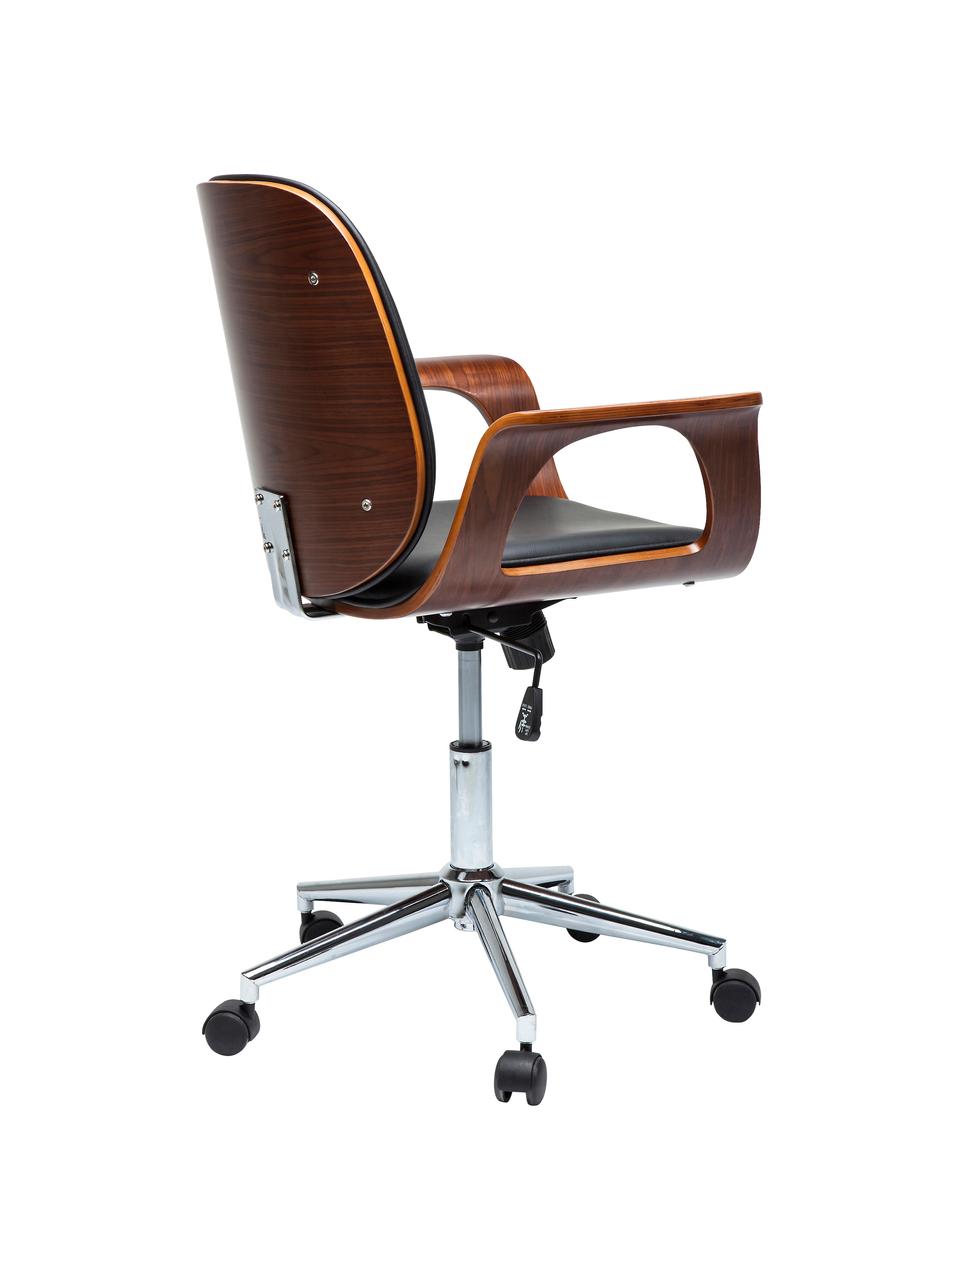 Krzesło biurowe ze sztucznej skóry Patron, obrotowe, Tapicerka: poliuretan, Nogi: metal malowany proszkowo, Czarna skóra ekologiczna, S 67 x G 56 cm